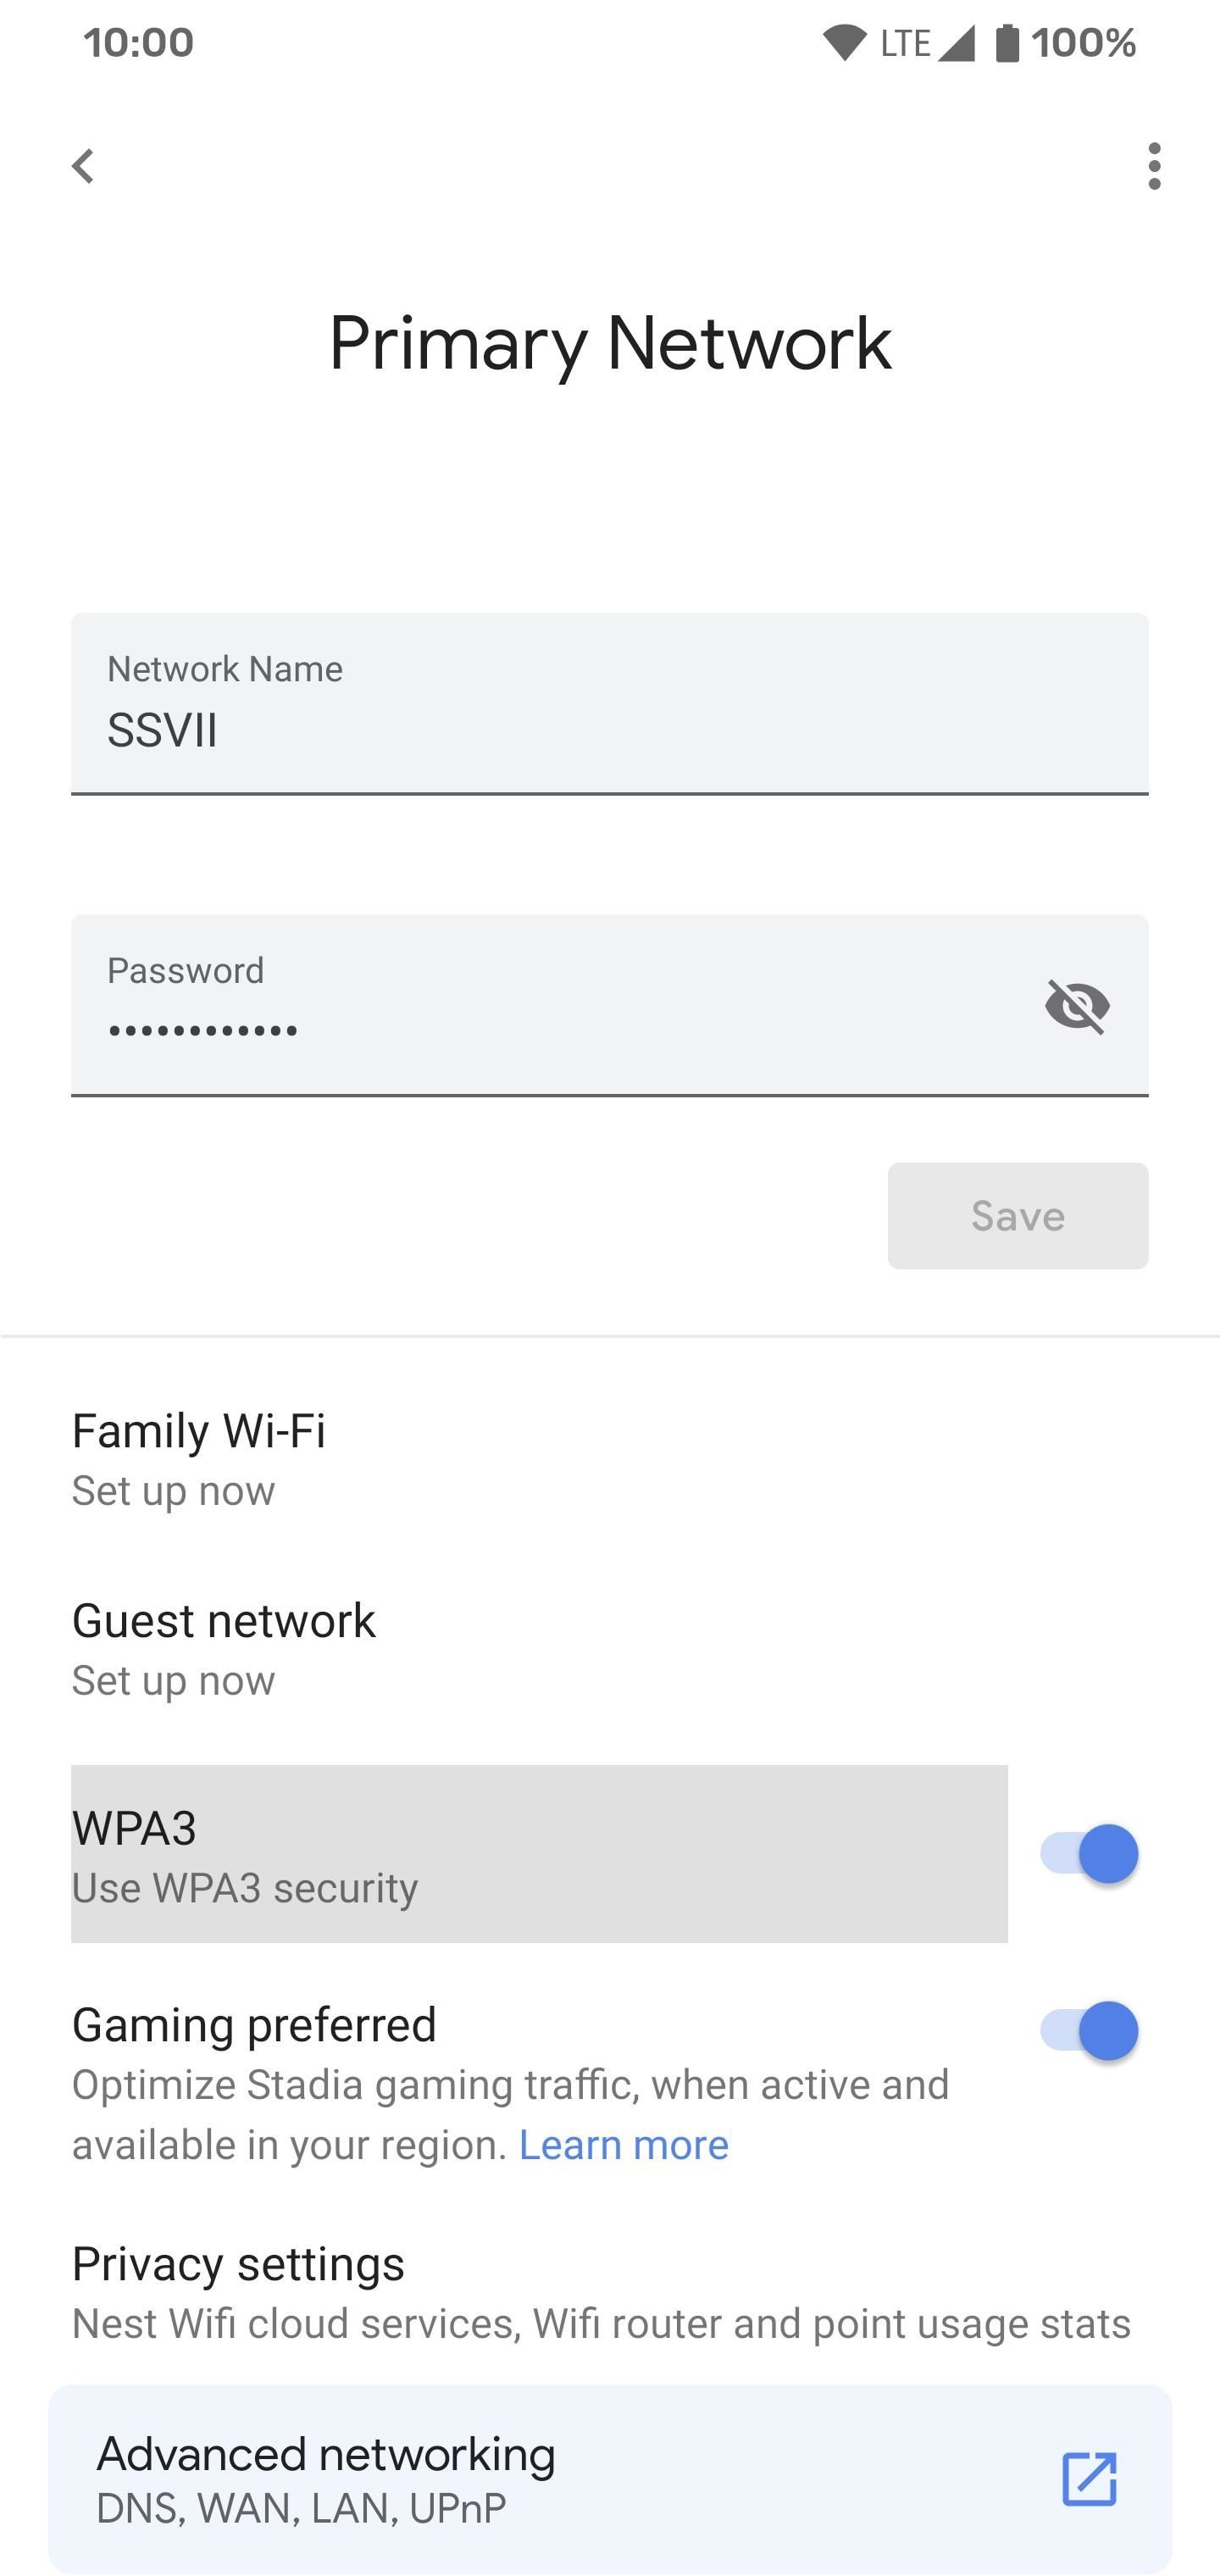 วิธีเปิดใช้งาน WPA3 บนเครือข่าย Google WiFi ของคุณเพื่อเพิ่มความปลอดภัยแบบไร้สาย